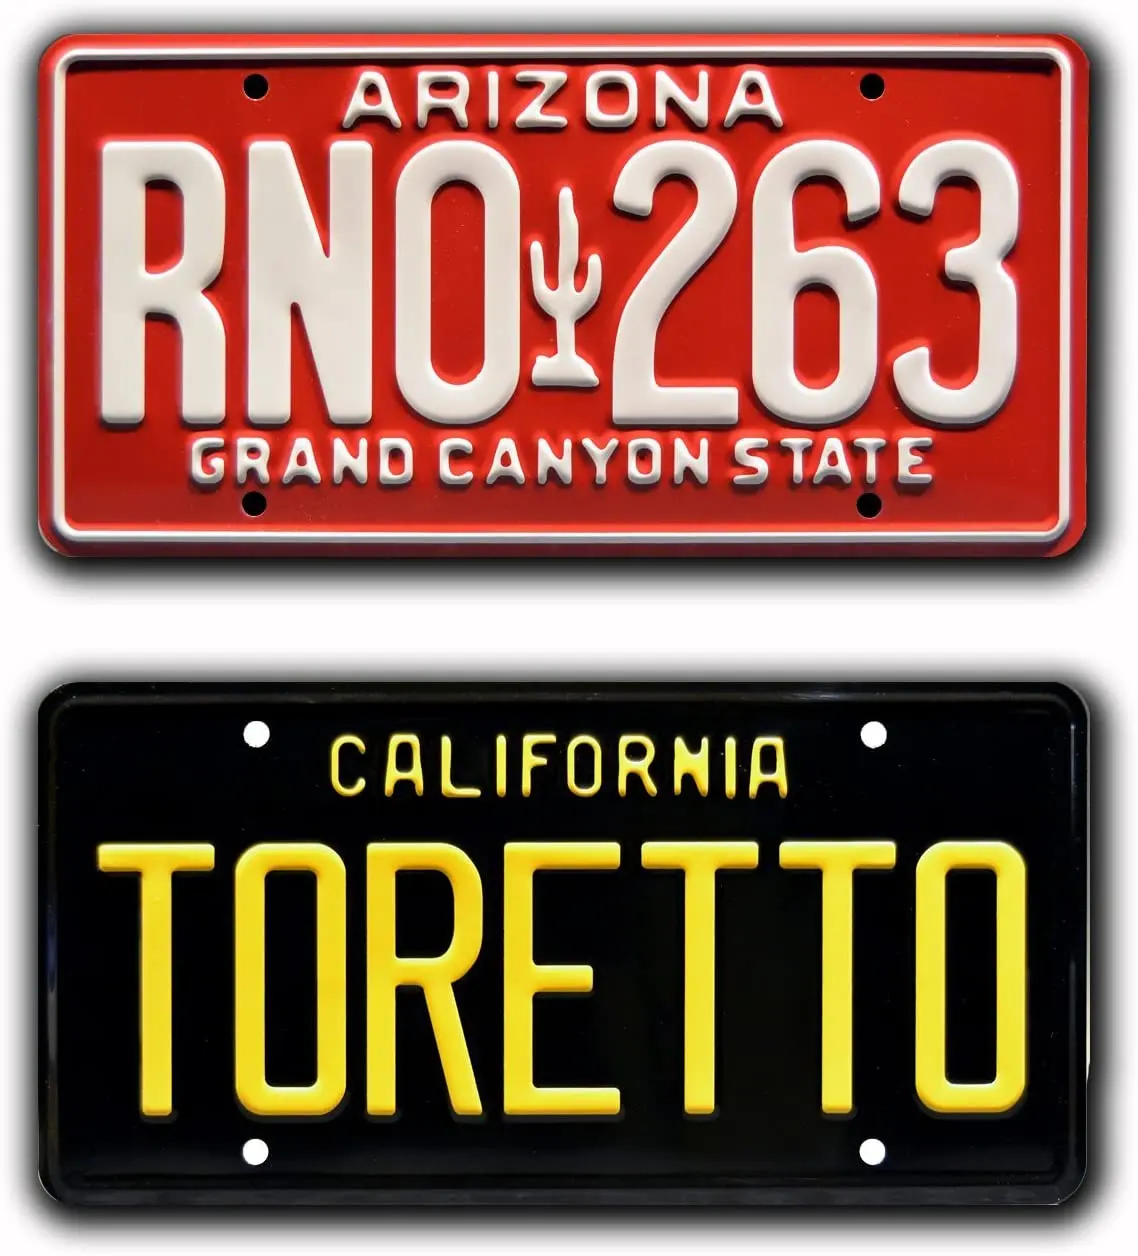 

Машины знаменитостей Форсаж | Toretto + RNO 263 | Металлические номерные знаки